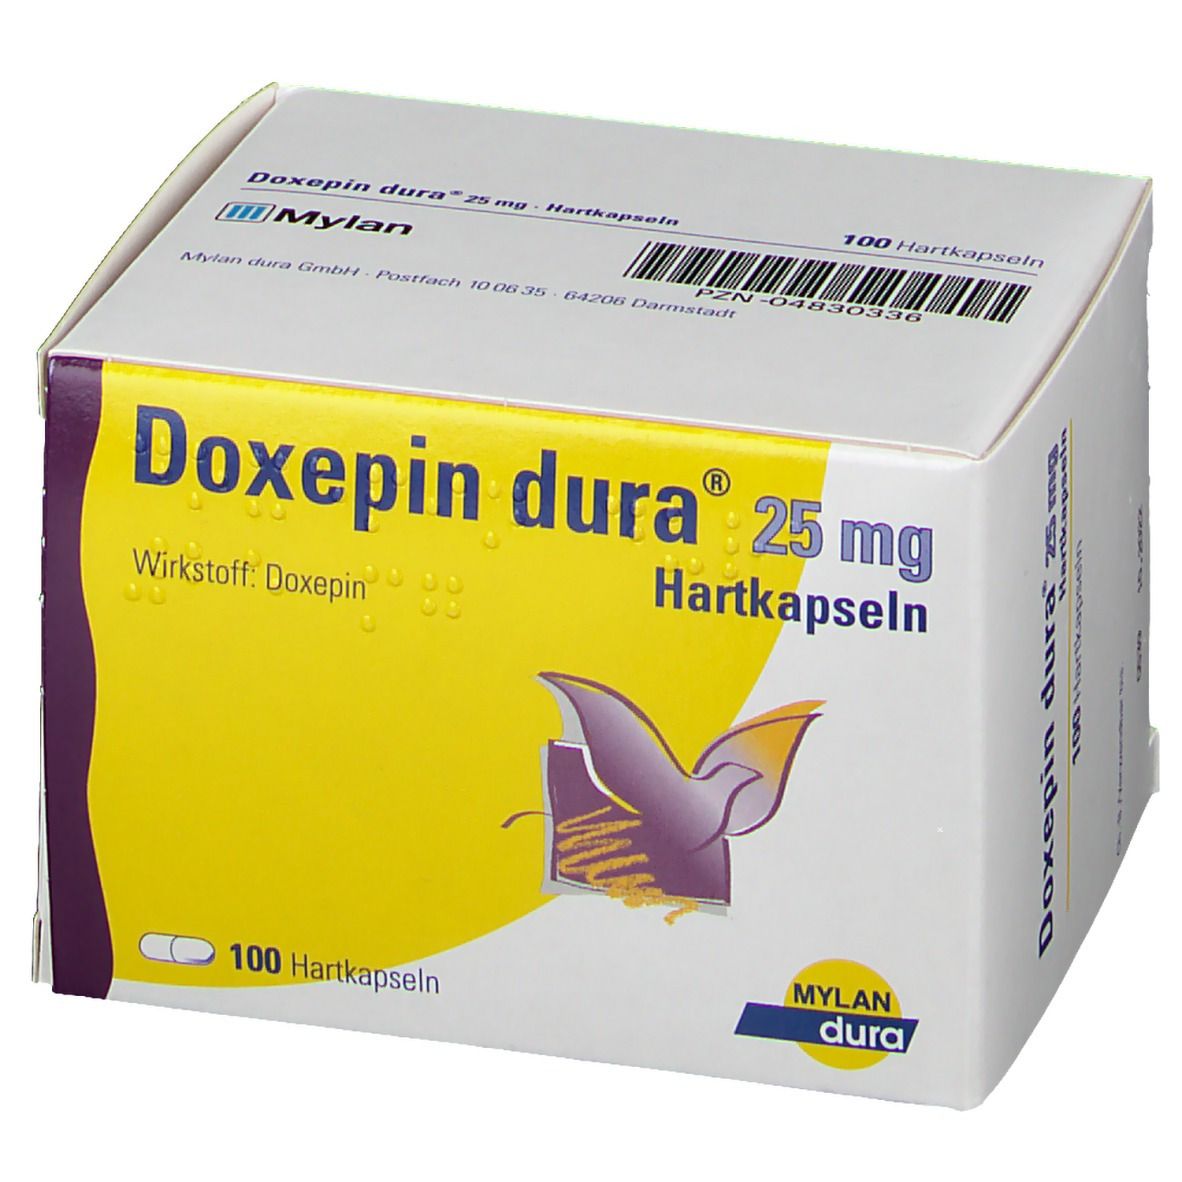 Doxepin dura® 25 mg